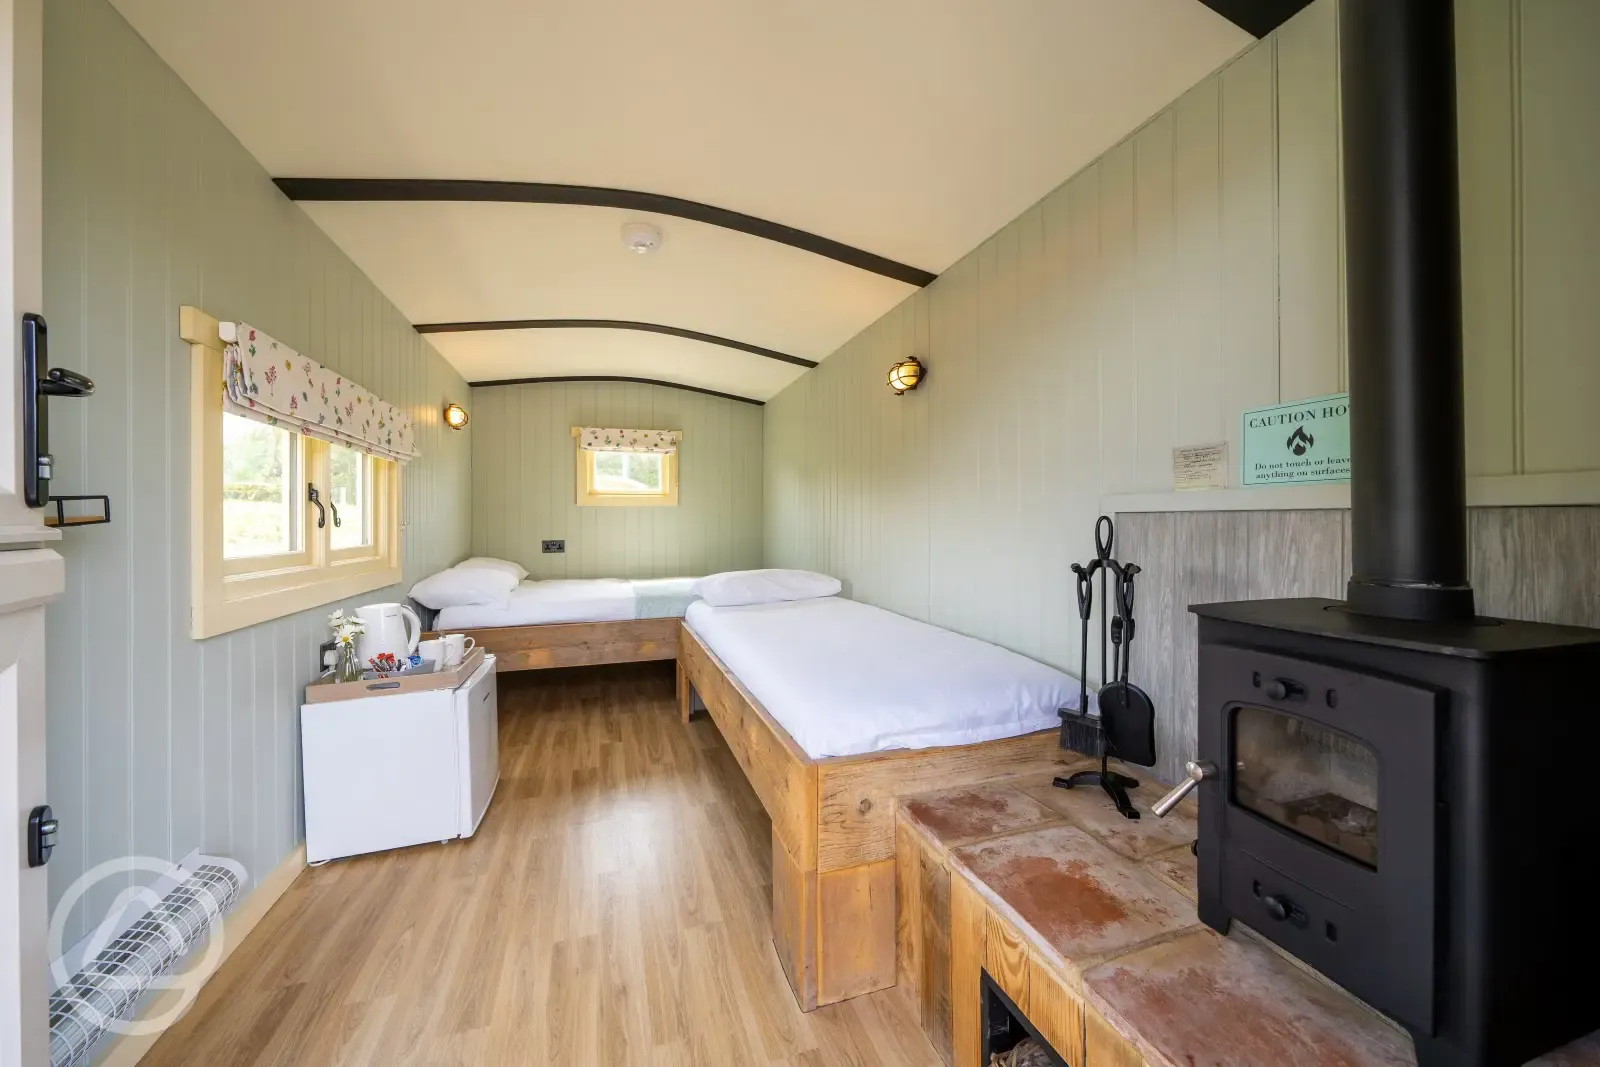 2 bed Shepherd's Hut